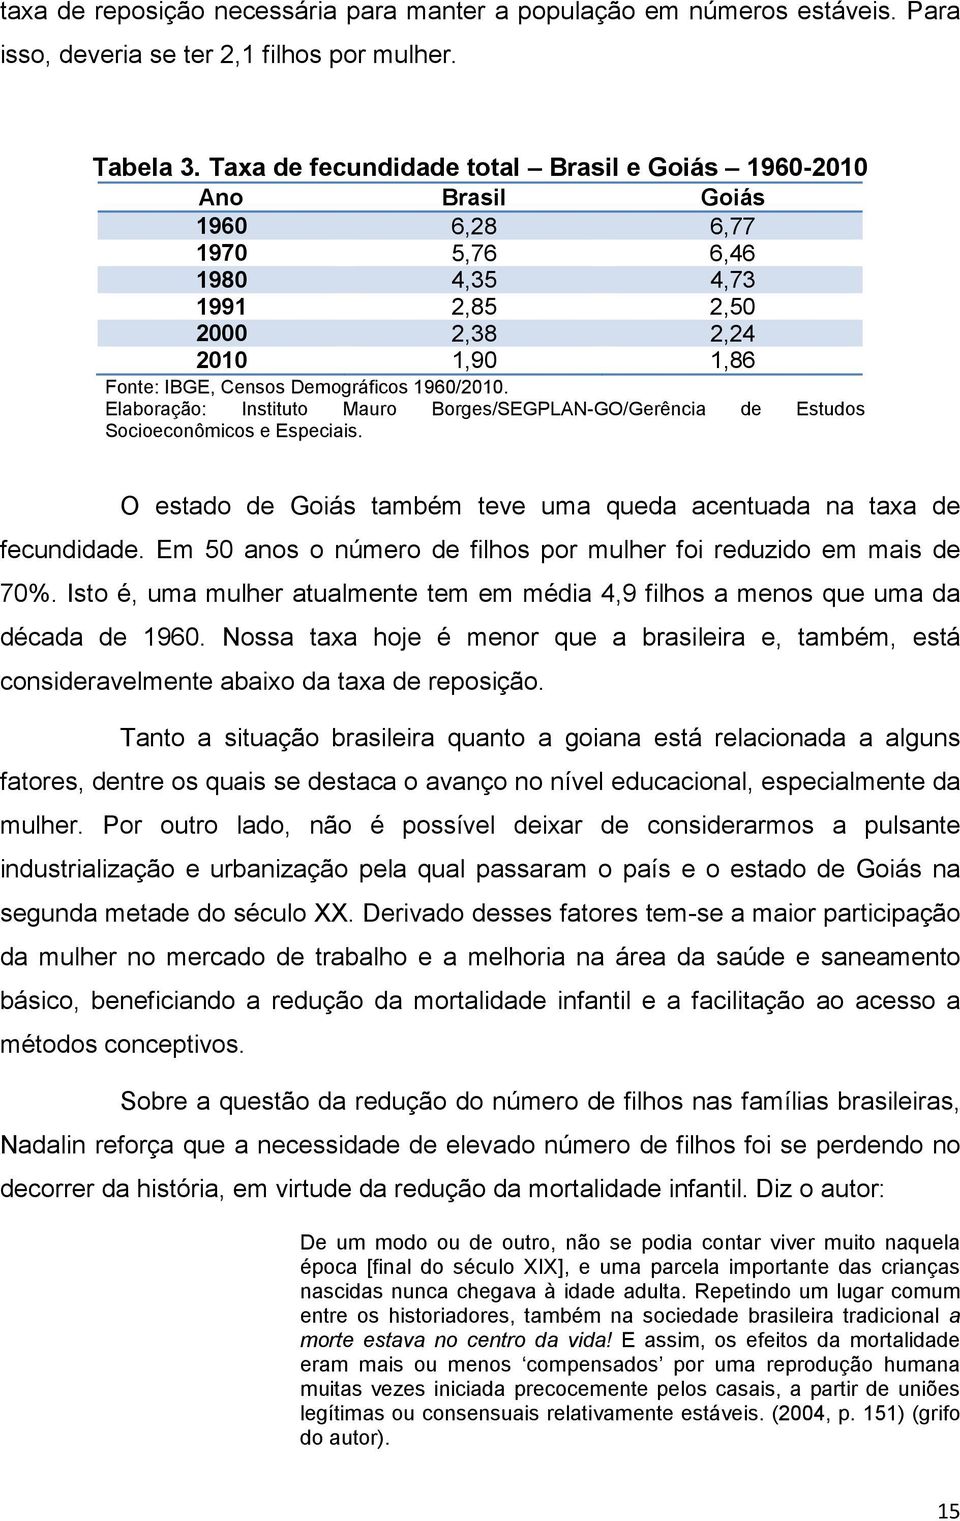 1960/2010. Elaboração: Instituto Mauro Borges/SEGPLAN-GO/Gerência de Estudos Socioeconômicos e Especiais. O estado de Goiás também teve uma queda acentuada na taxa de fecundidade.